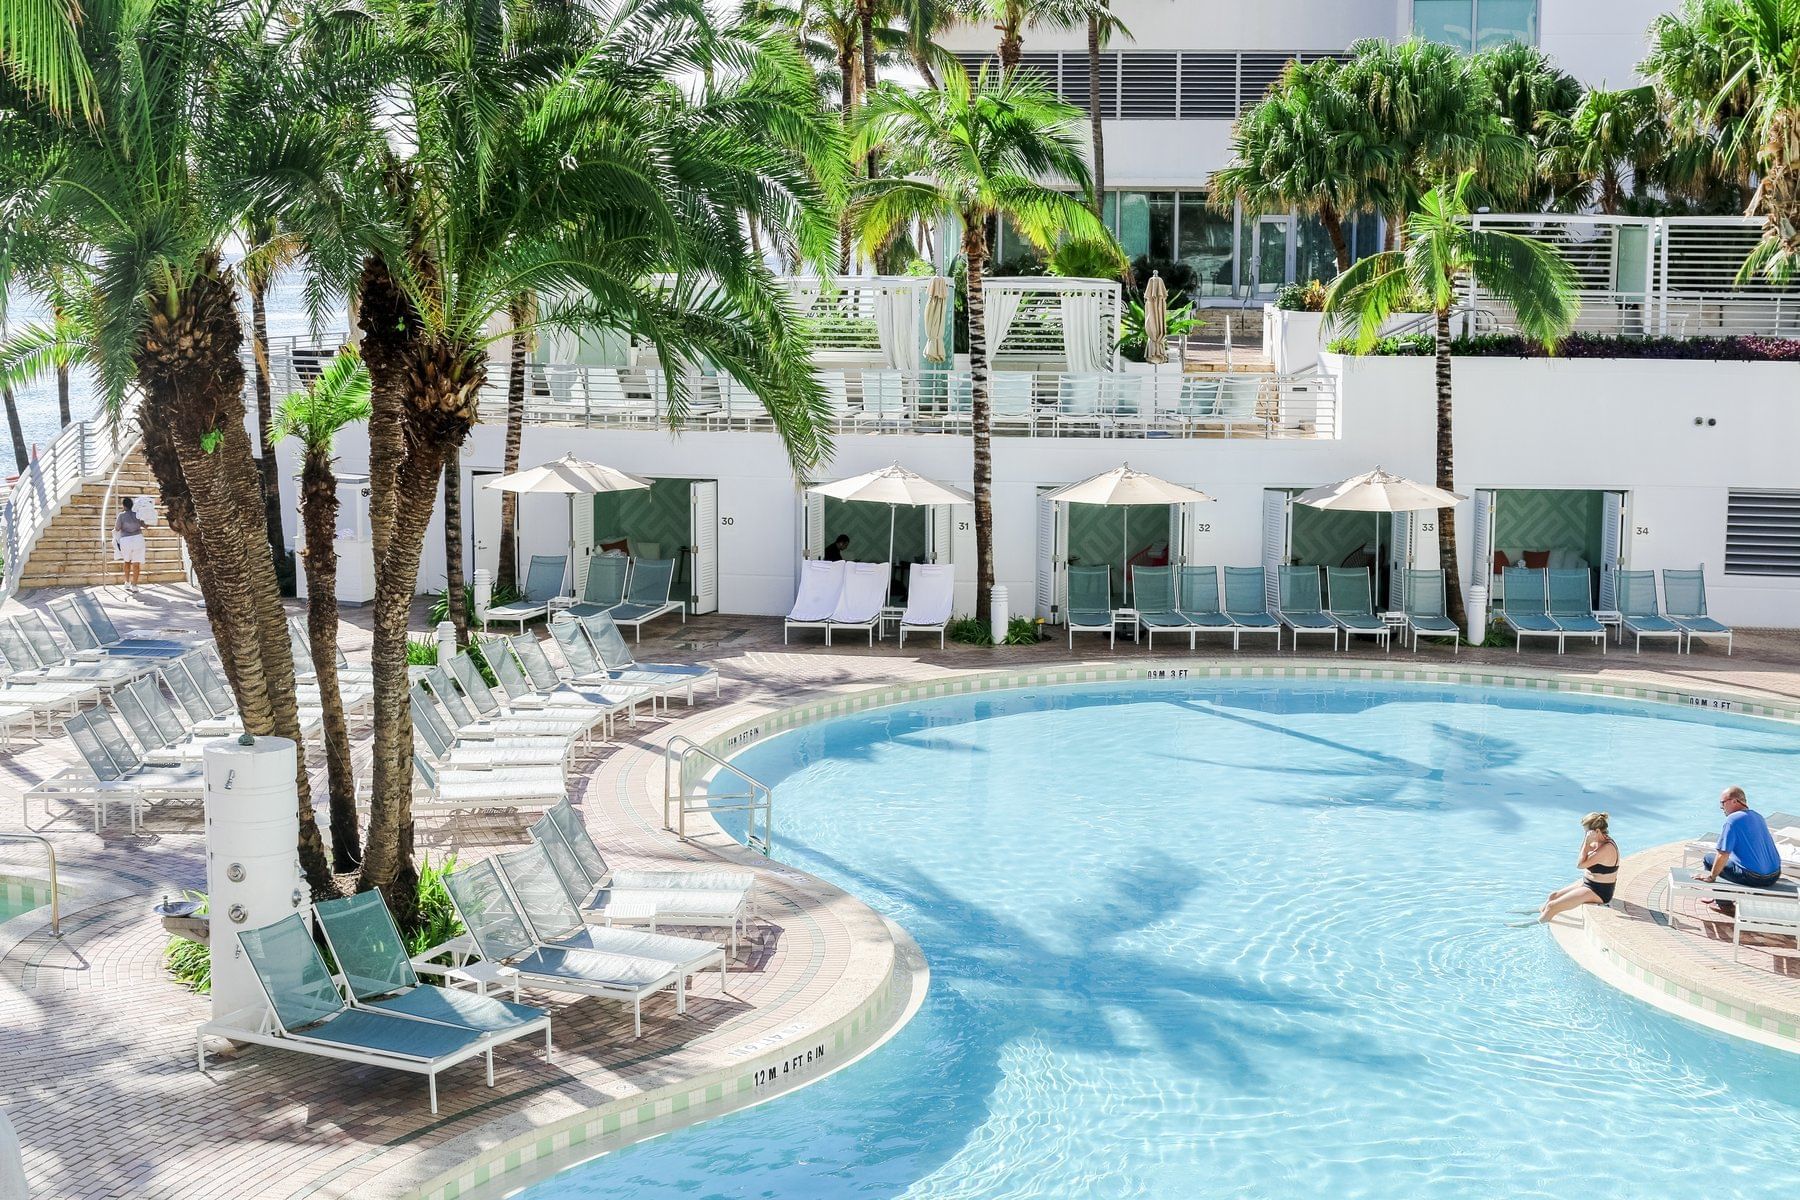 Resort Pool - The Diplomat Beach Resort, South FL